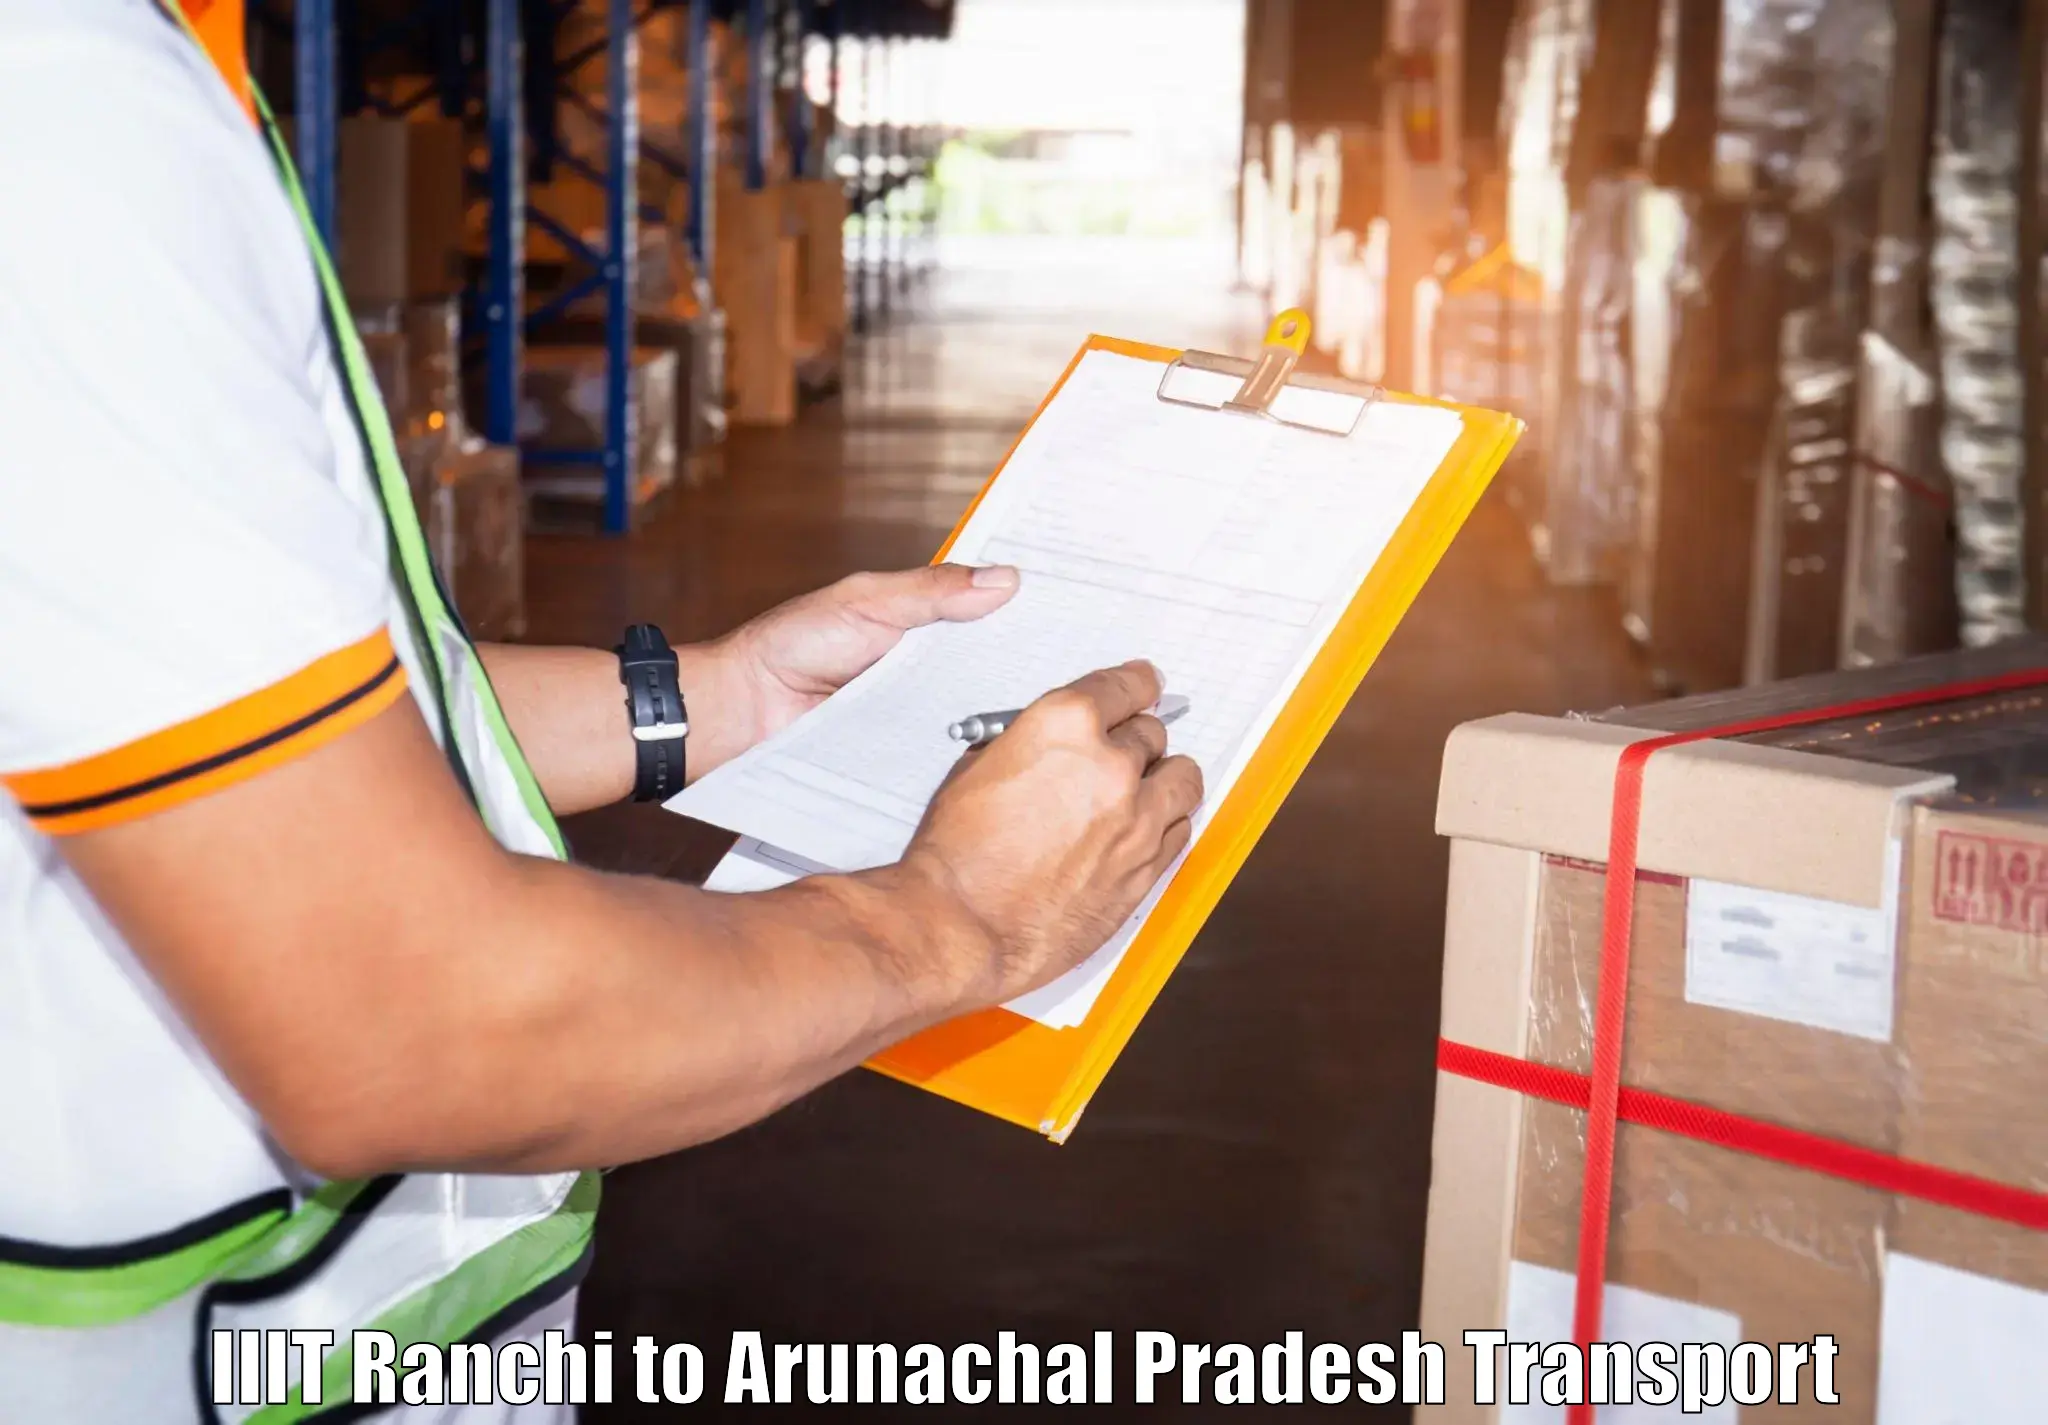 Nationwide transport services IIIT Ranchi to Arunachal Pradesh